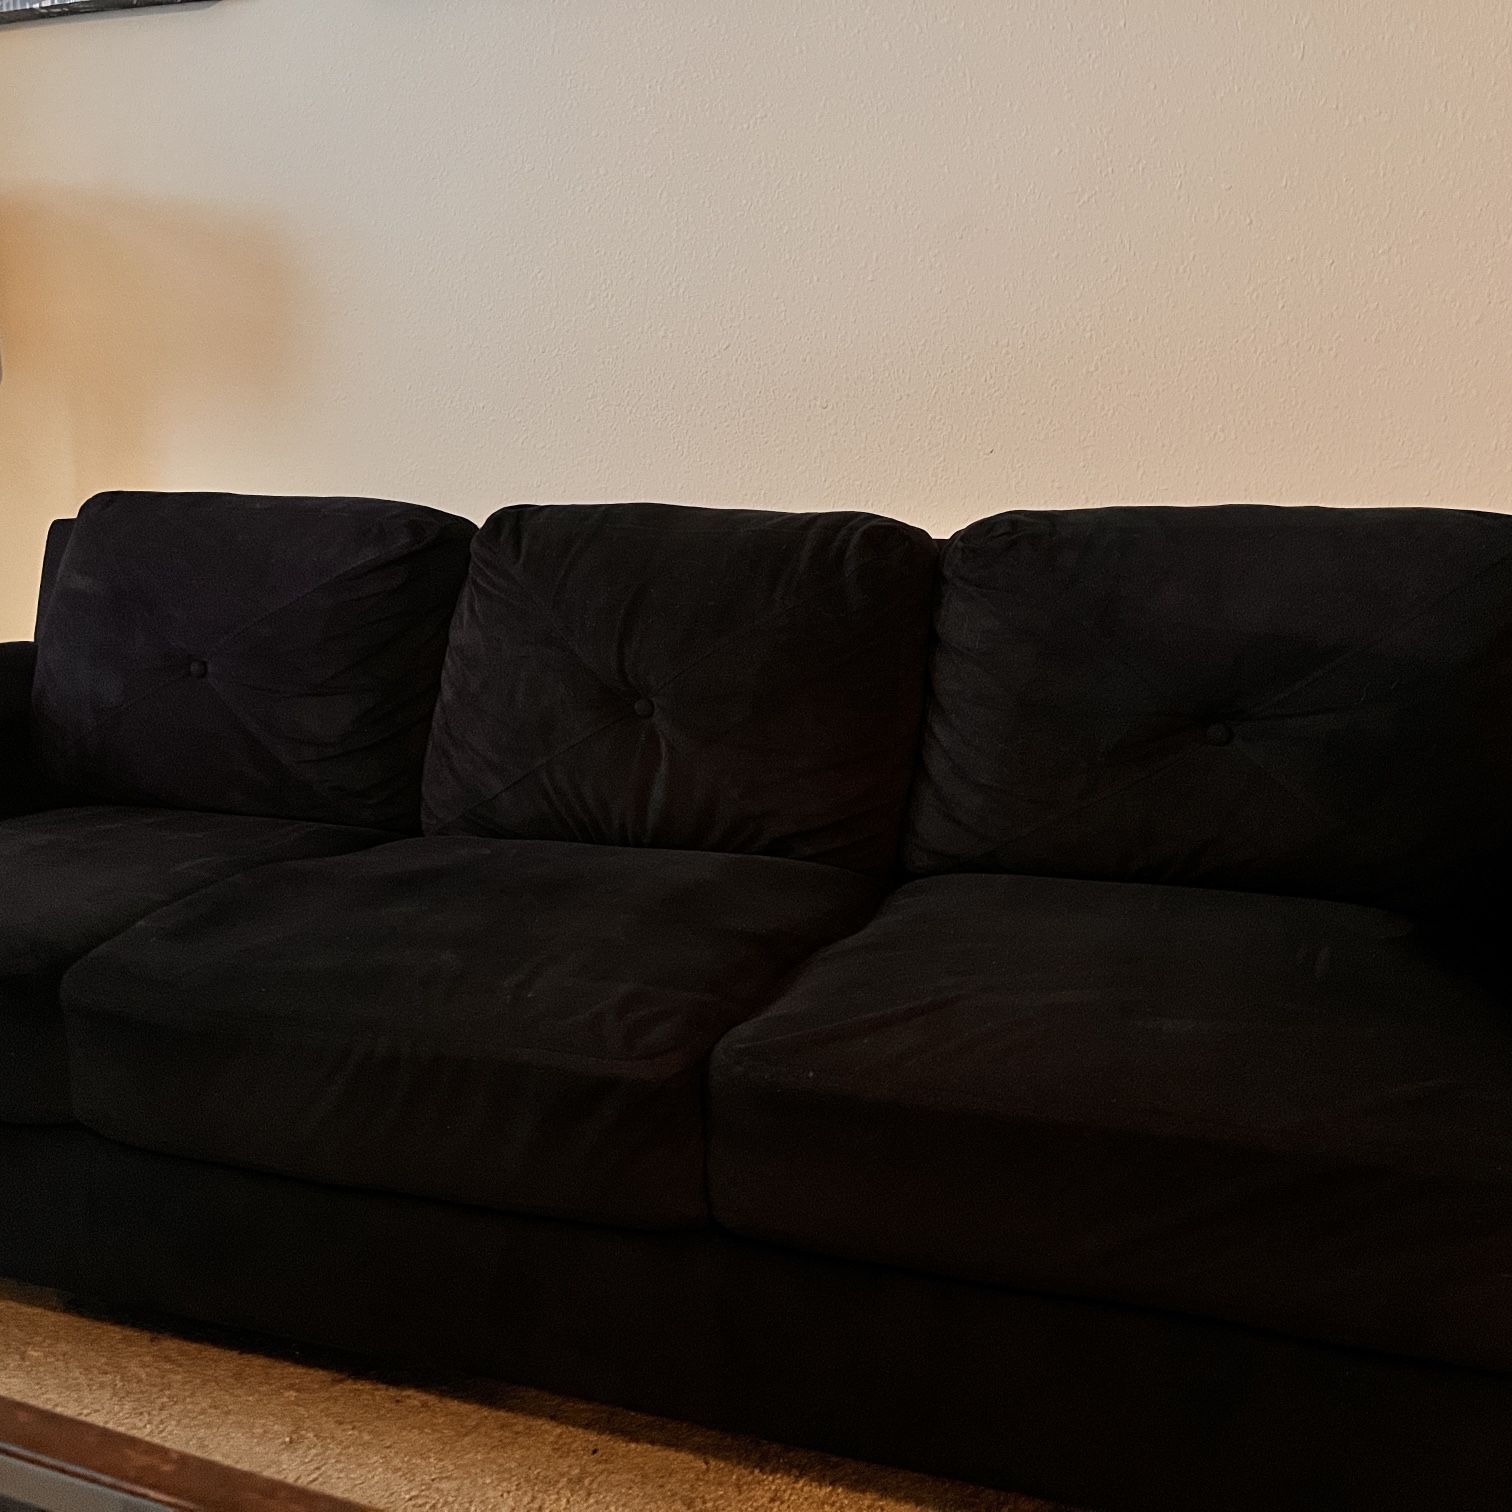 Black Living Room Sofa